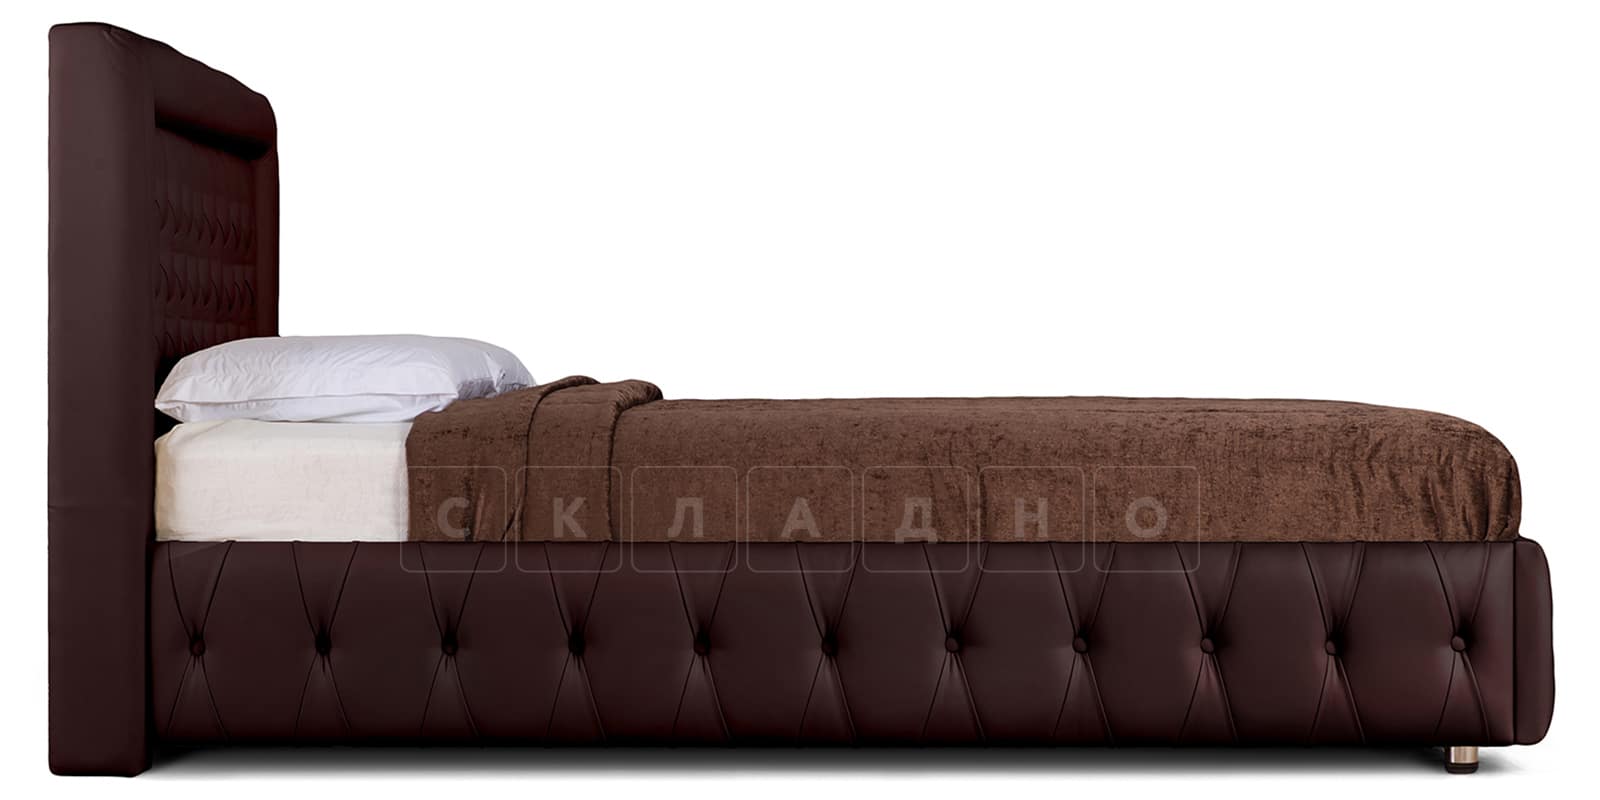 Мягкая кровать Малибу 160 см экокожа шоколадного цвета вариант 7 фото 3 | интернет-магазин Складно